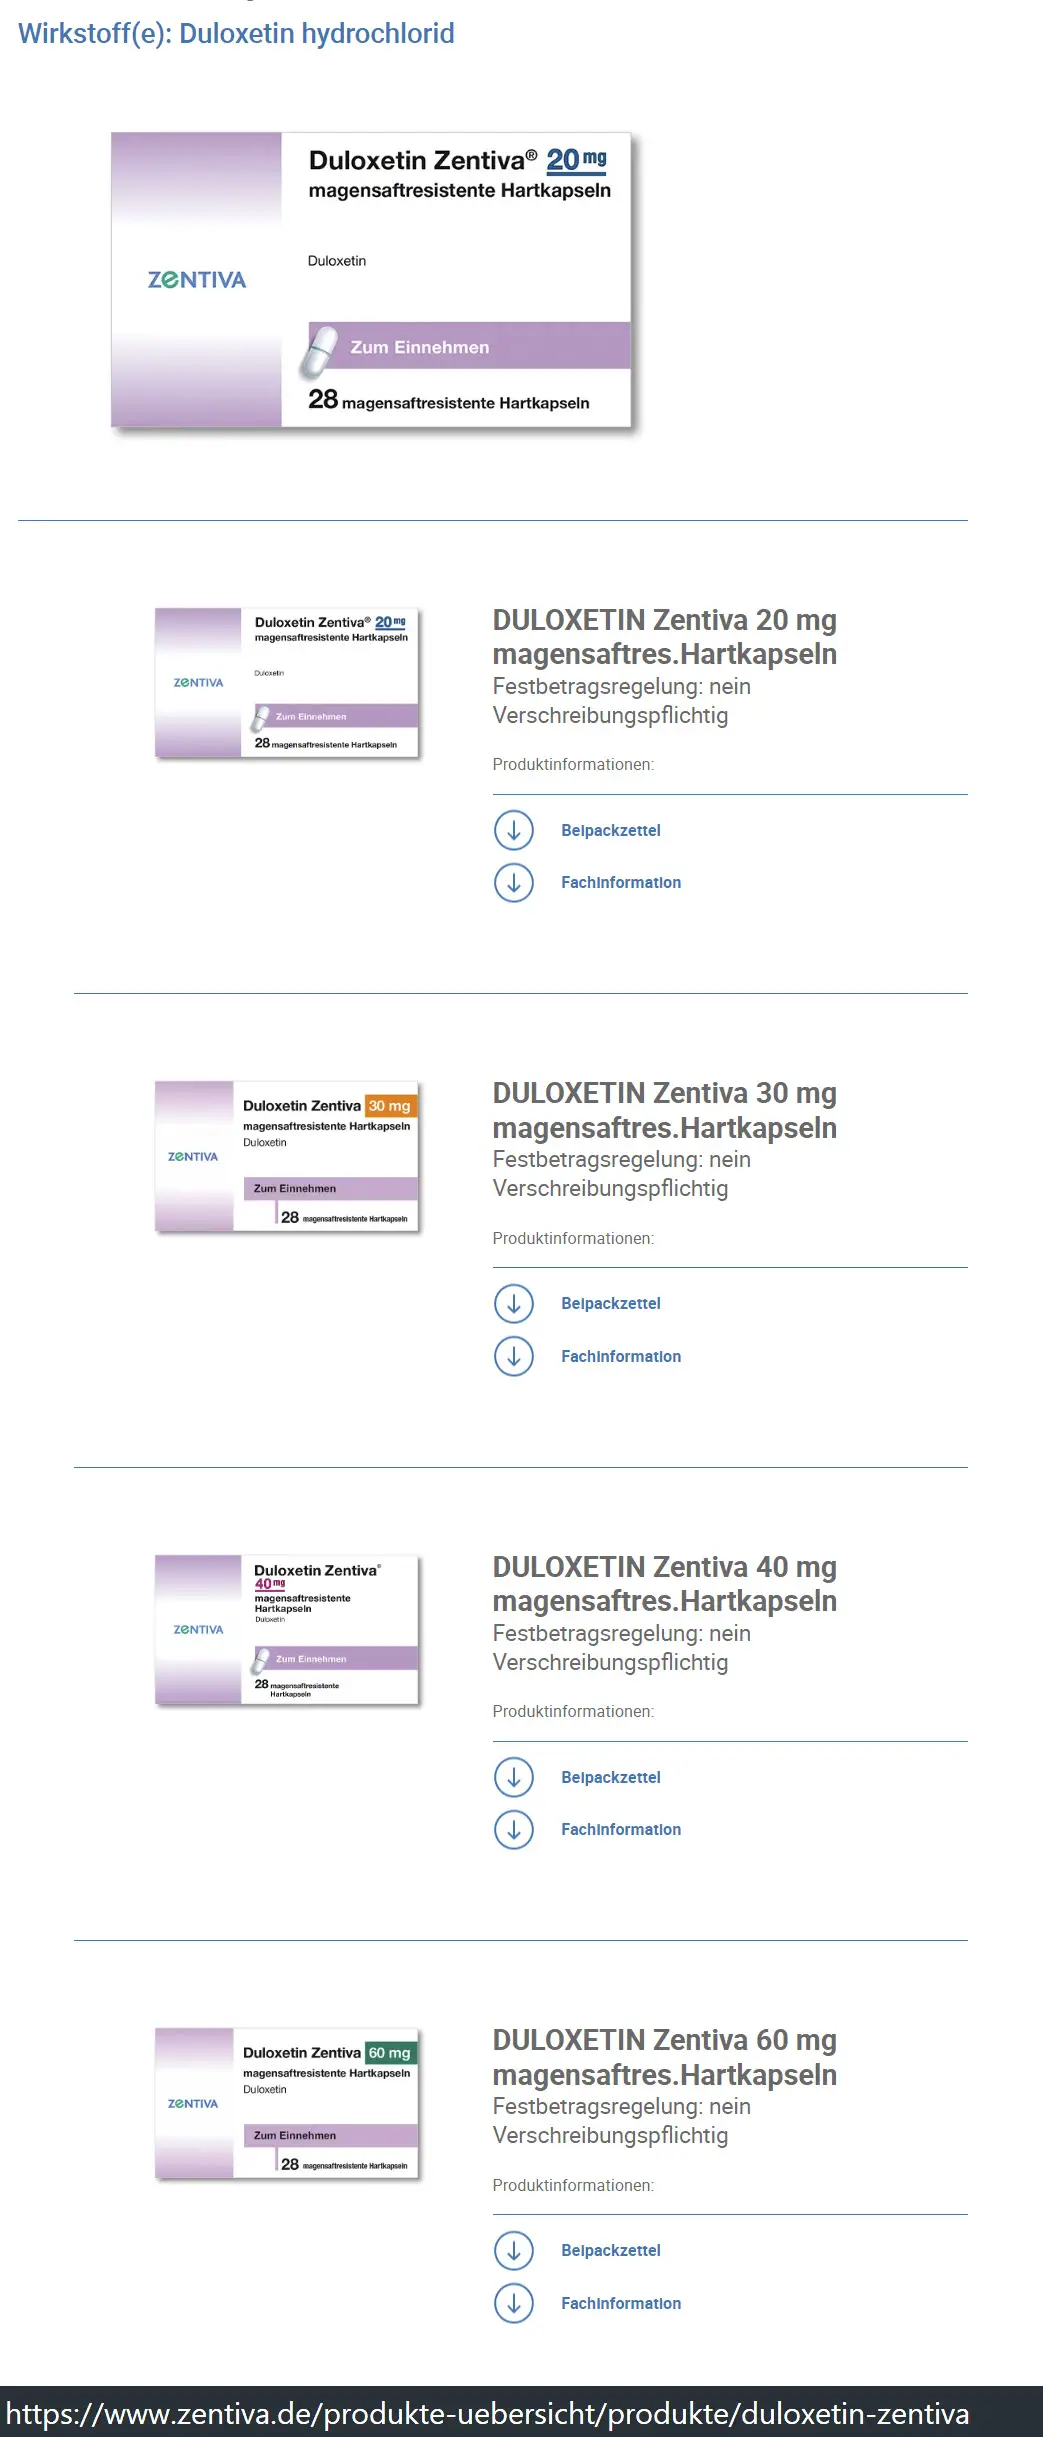 Der Hersteller Zentiva bietet Duloxetin in den Dosierungen 20 mg, 30 mg, 40 mg und 60 mg an. - Viele andere Pharmahersteller konzentrieren sich auf die Dosis 30mg und 60mg.